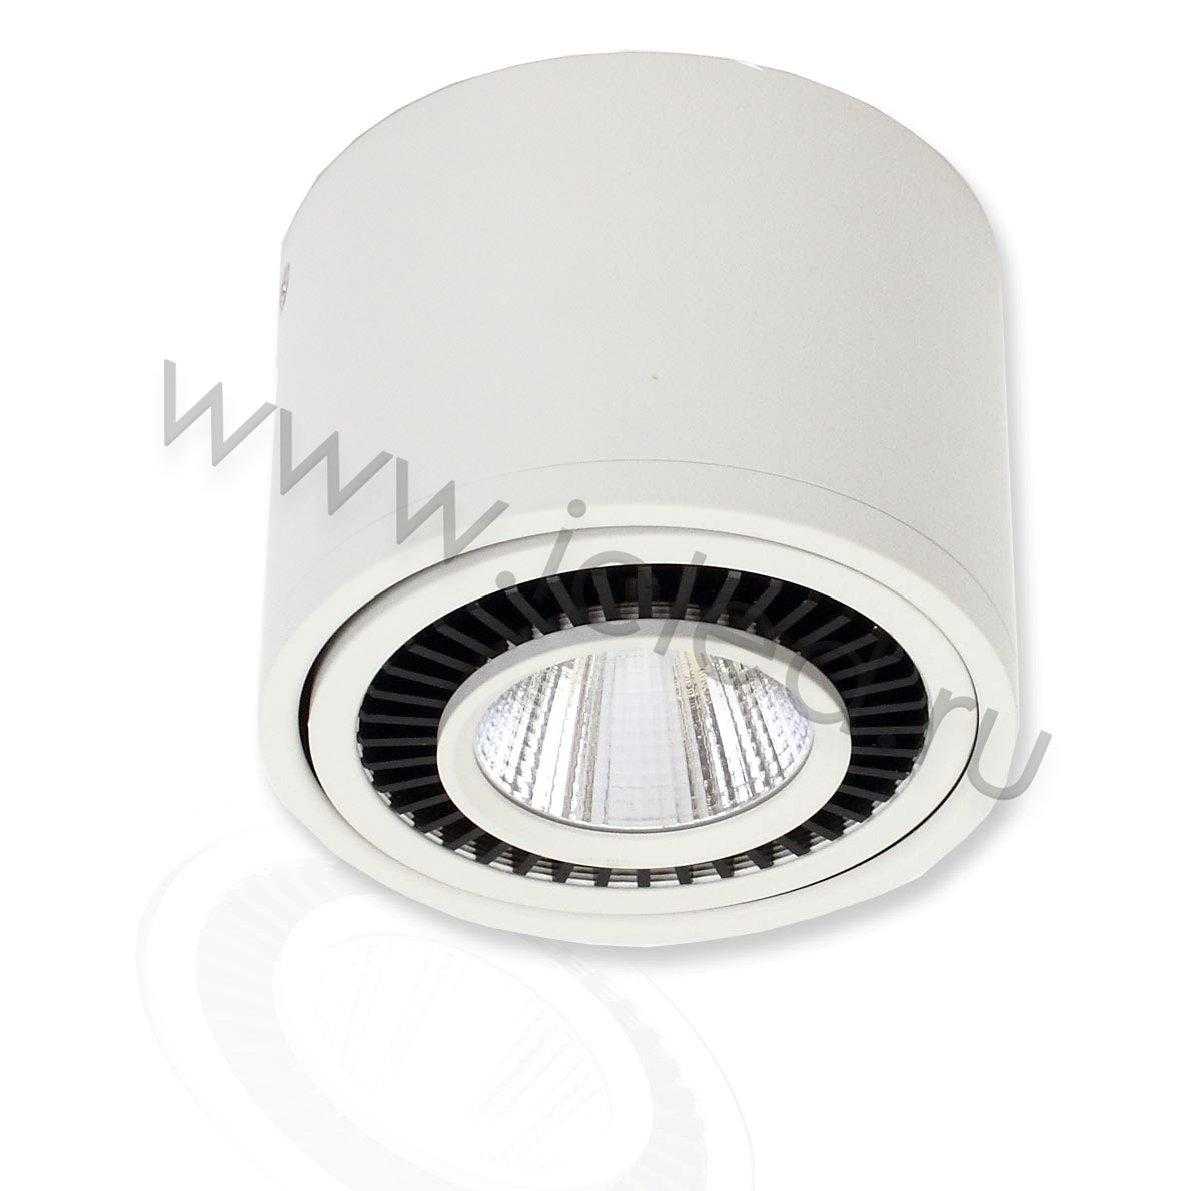 Светодиодные светильники Светодиодный светильник JH151B-15W B790 (15W, white)